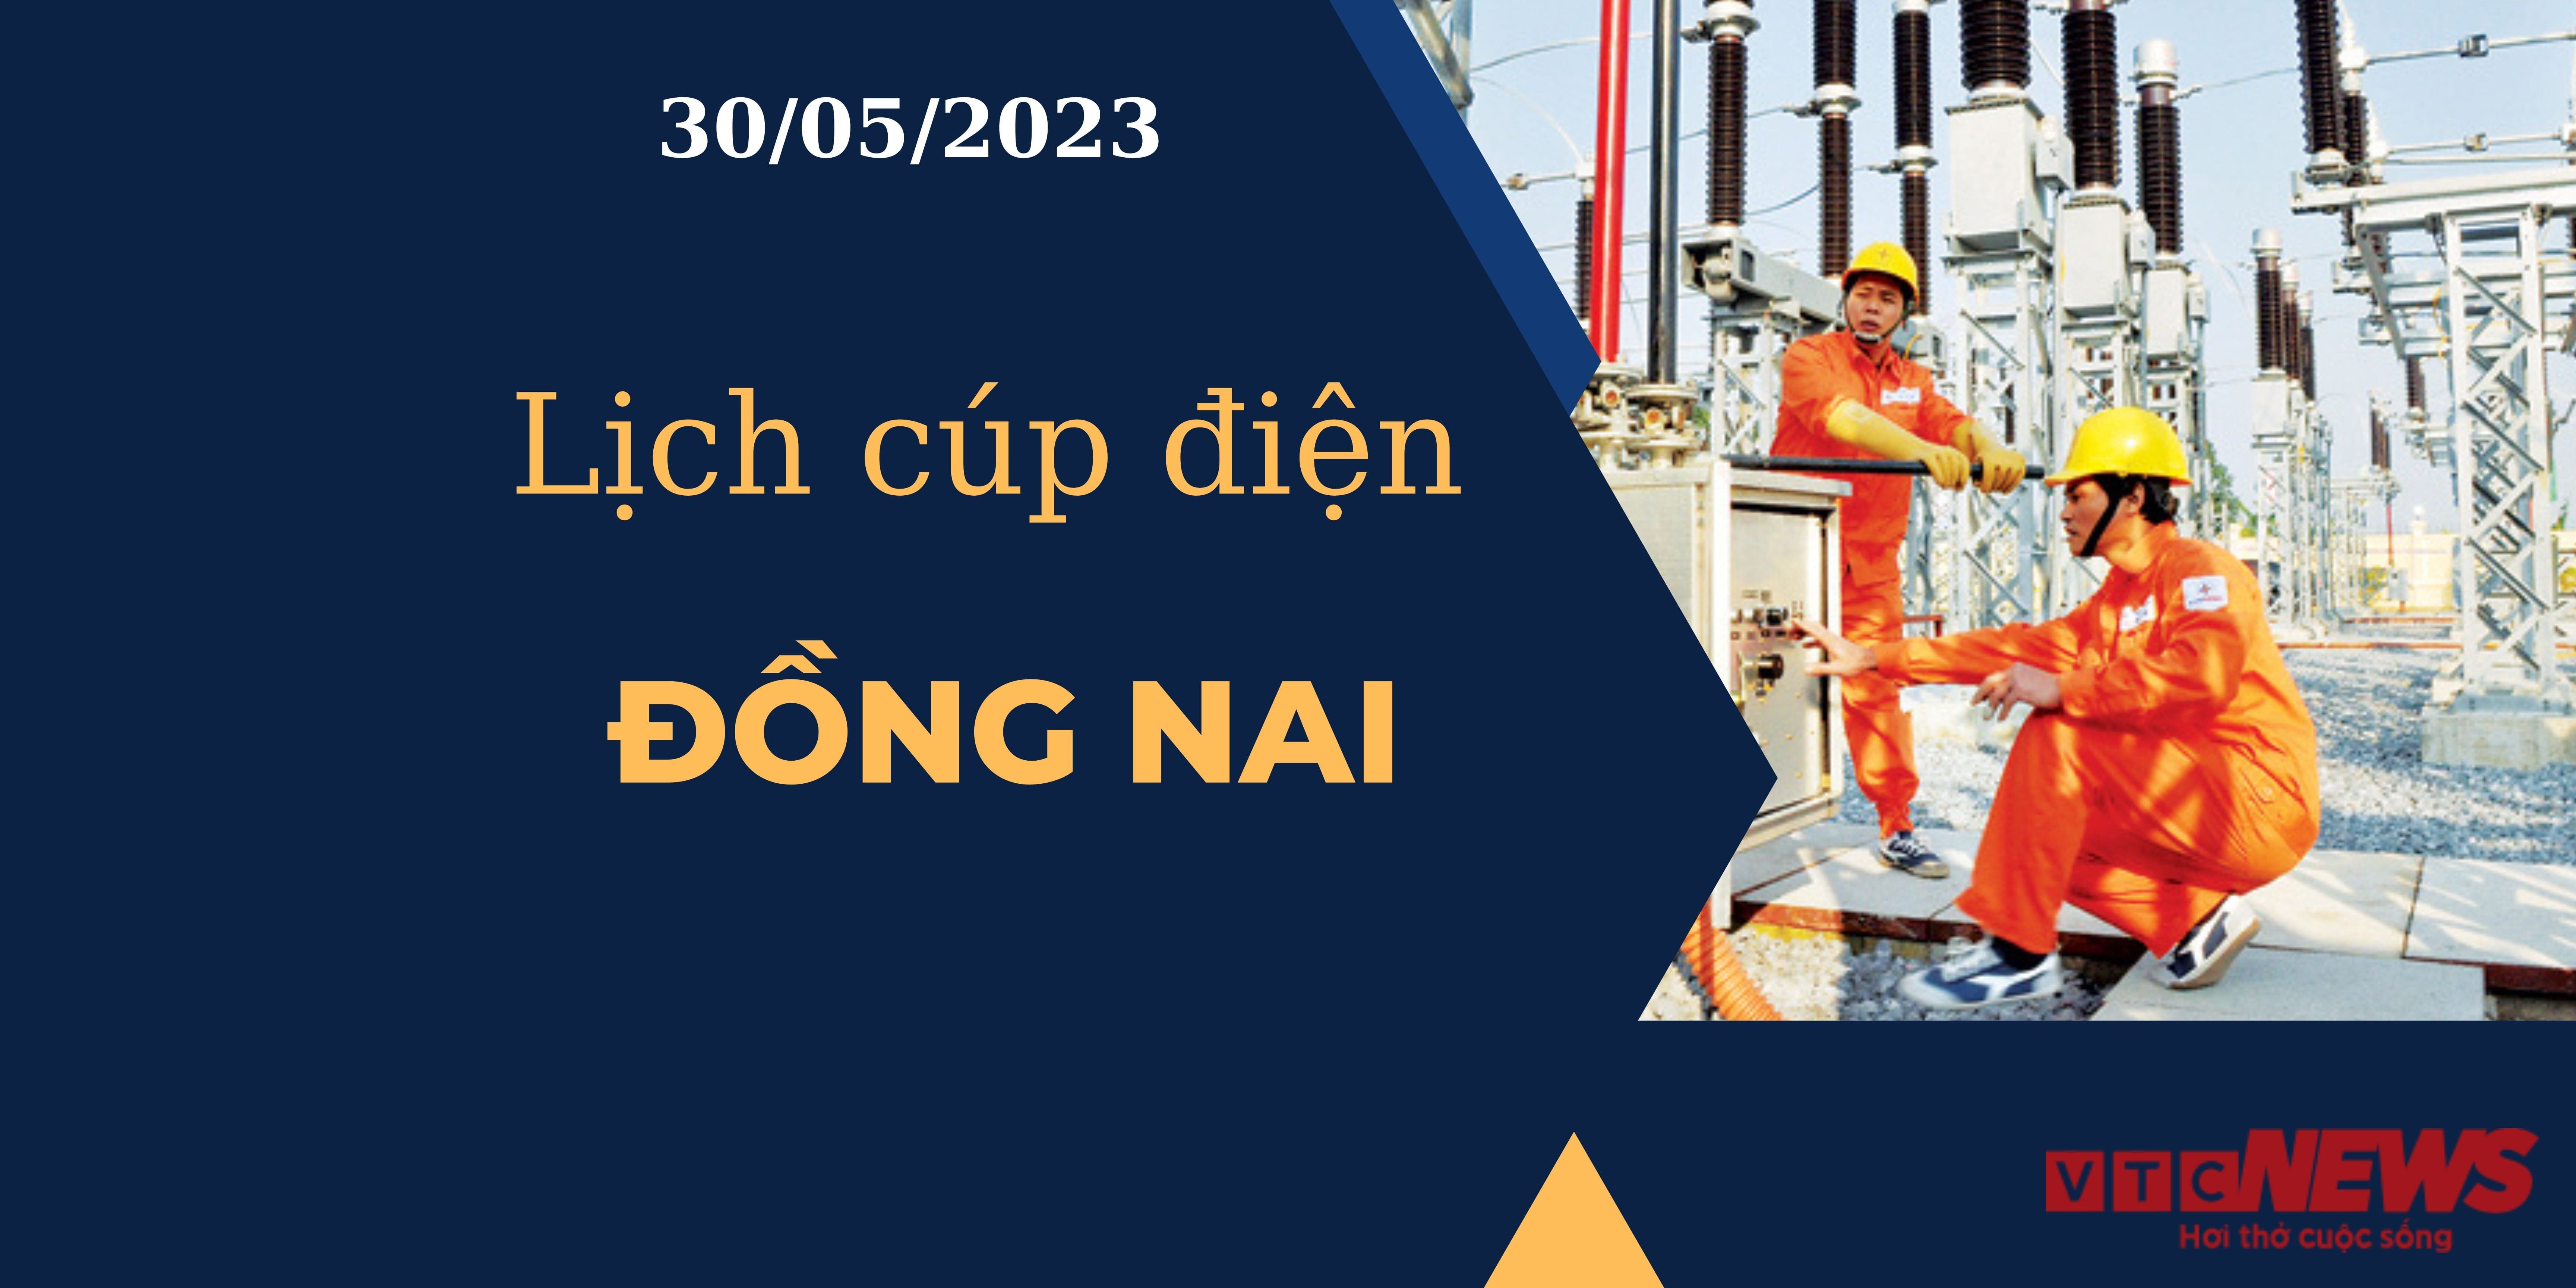 Lịch cúp điện hôm nay ngày 30/05/2023 tại Đồng Nai - 1